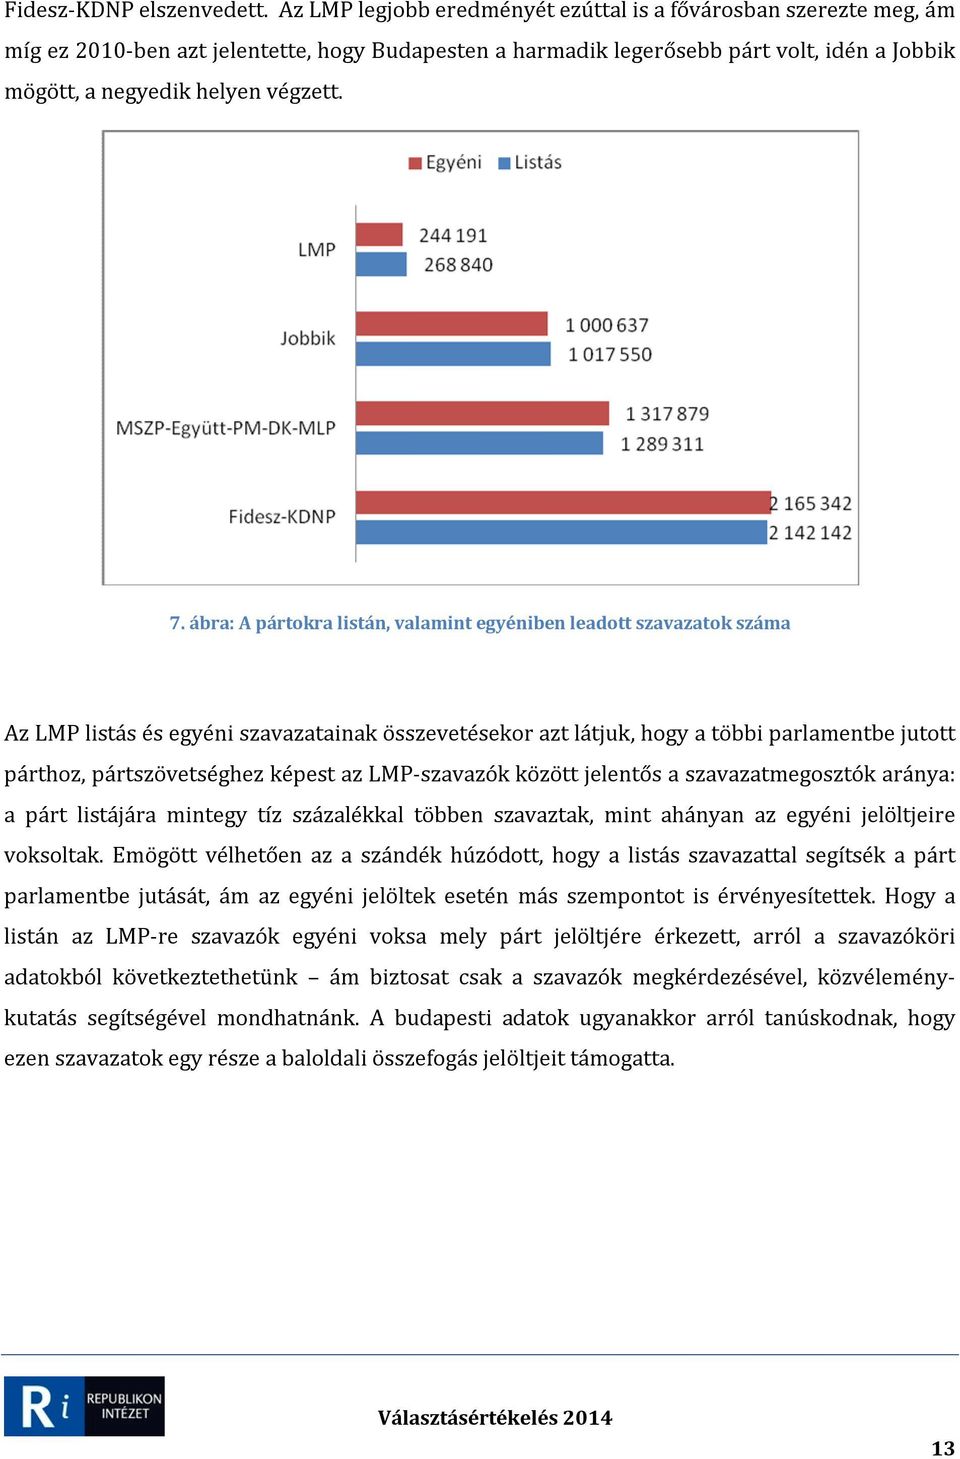 ábra: A pártokra listán, valamint egyéniben leadott szavazatok száma Az LMP listás és egyéni szavazatainak összevetésekor azt látjuk, hogy a többi parlamentbe jutott párthoz, pártszövetséghez képest